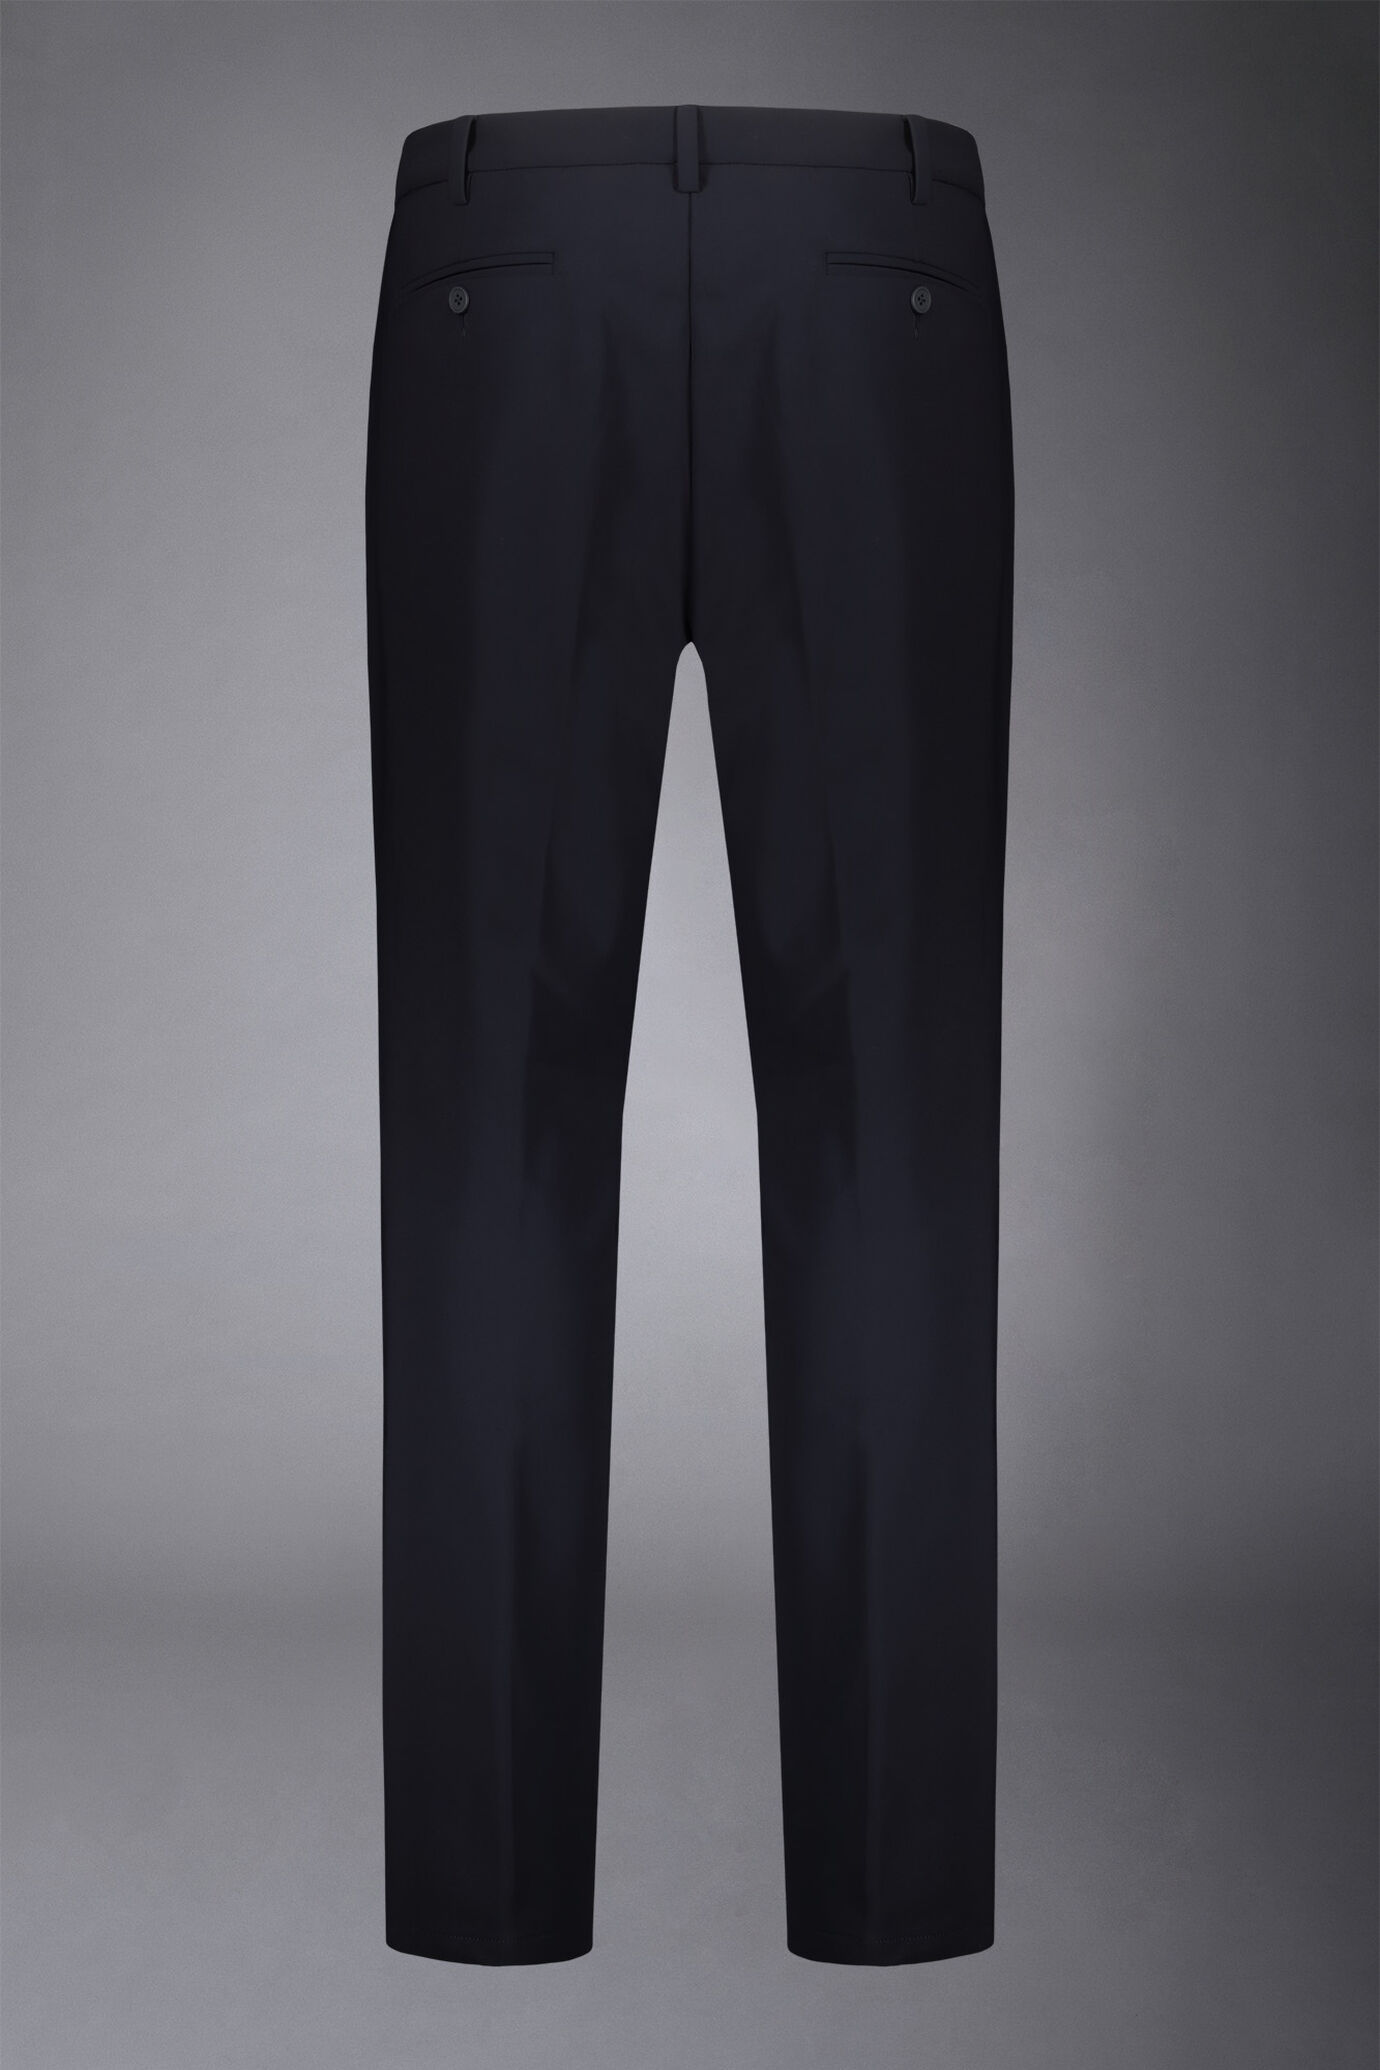 Pantalone chino uomo tessuto in nylon elasticizzato comfort fit image number 5